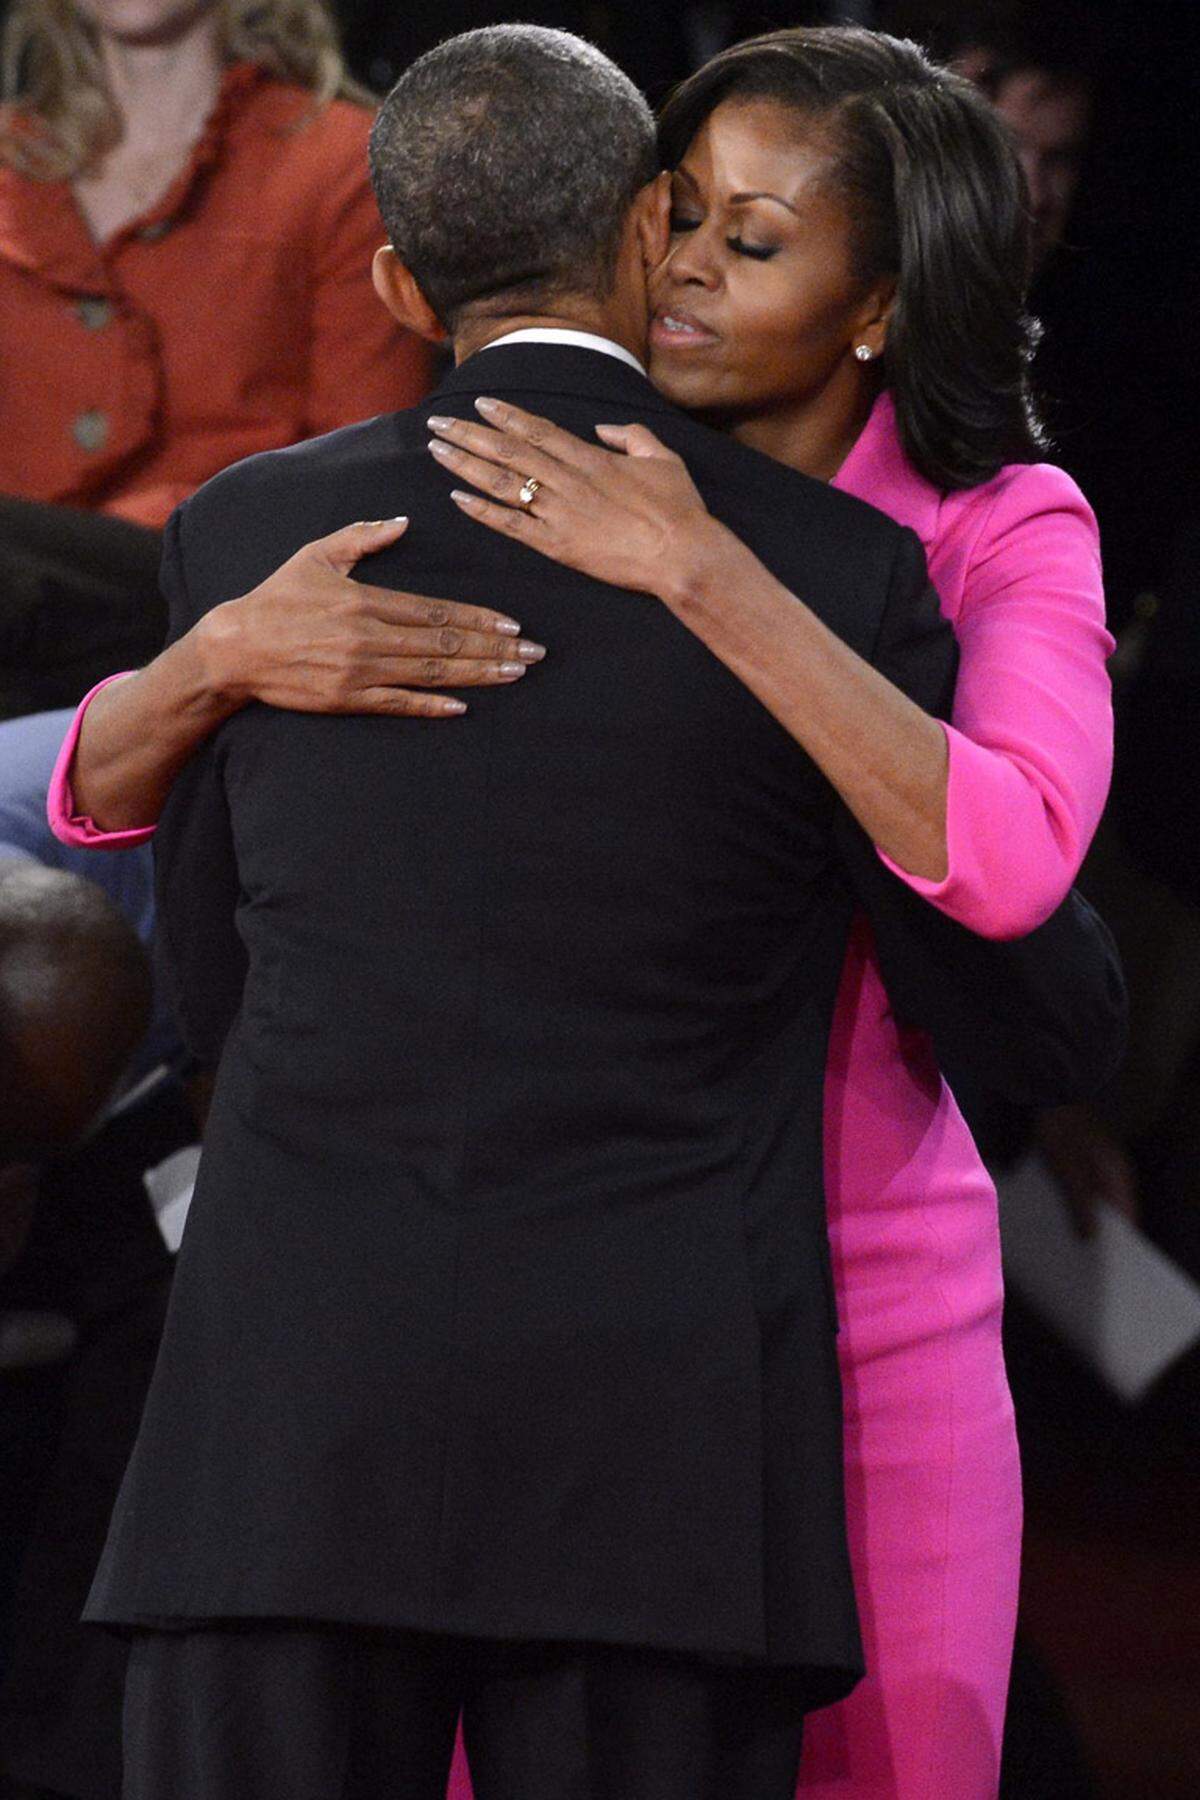 "Ich bin heute Abend so stolz auf meinen Ehemann", jubelte Michelle Obama, die Ehefrau des Präsidenten.